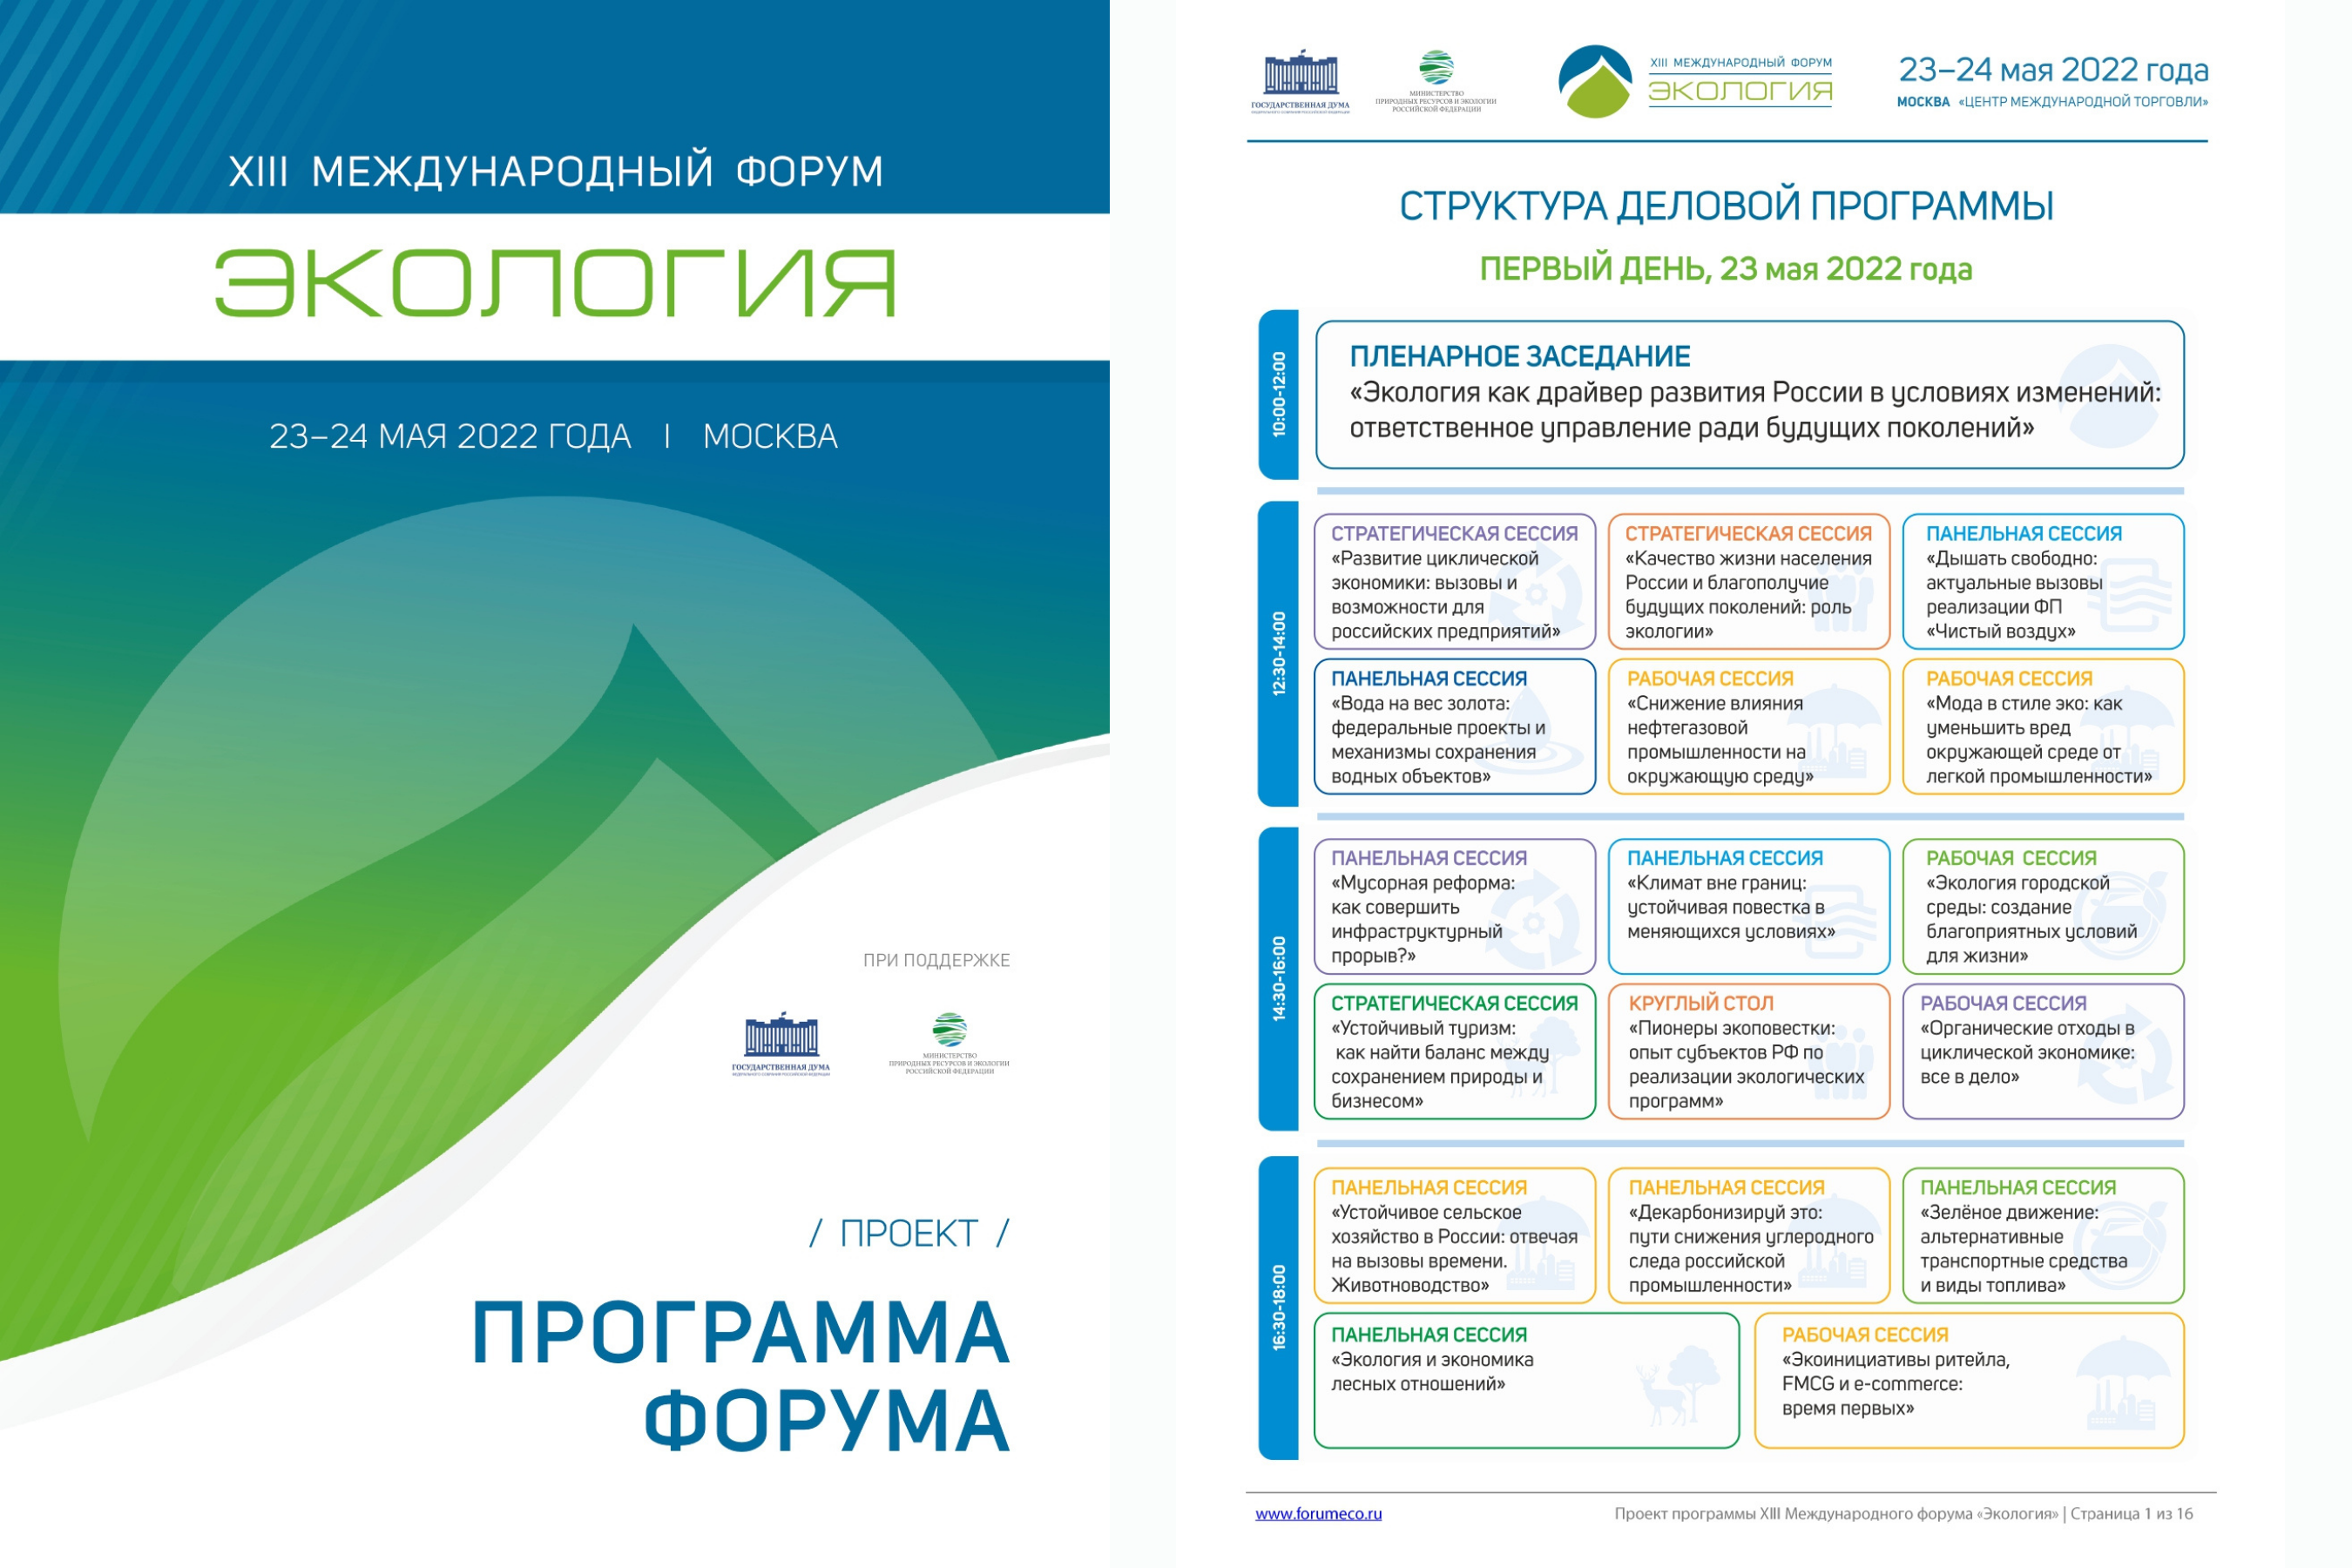 23-24 мая 2022 года в городе Москве состоится XIII Международный форум «Экология»